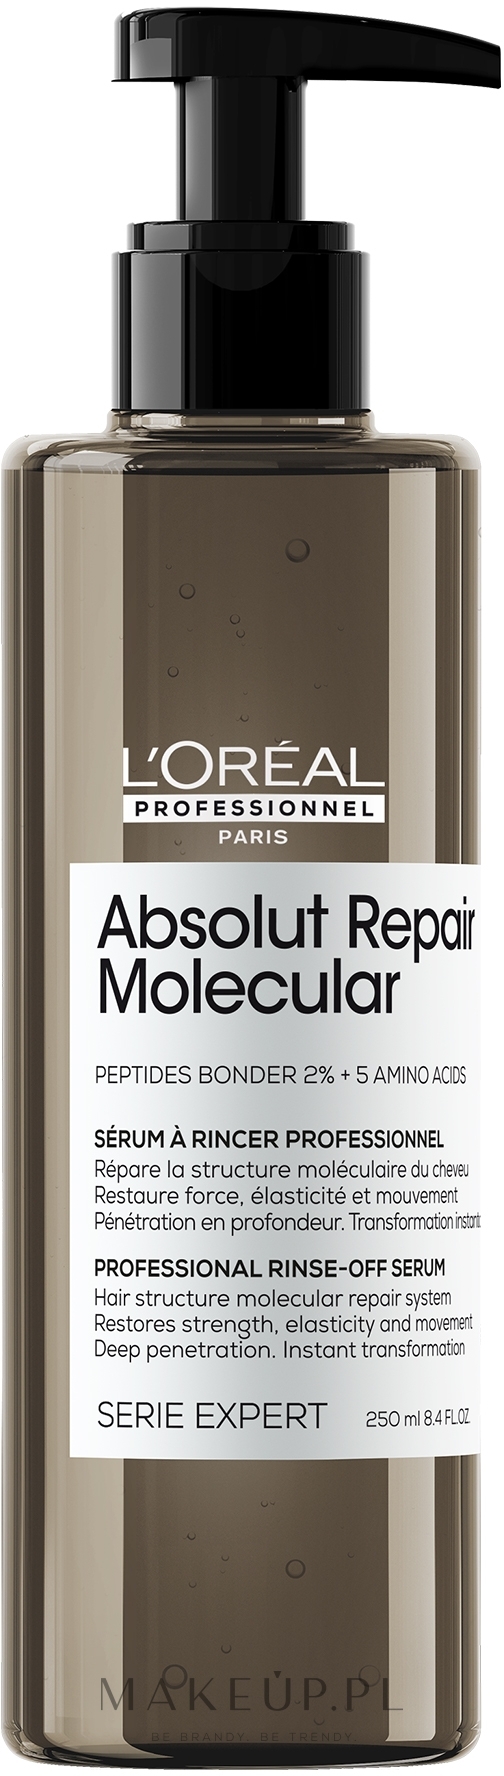 Profesjonalne serum do molekularnej odbudowy struktury zniszczonych włosów - L'Oreal Professionnel Serie Expert Absolut Repair Molecular Serum — Zdjęcie 250 ml